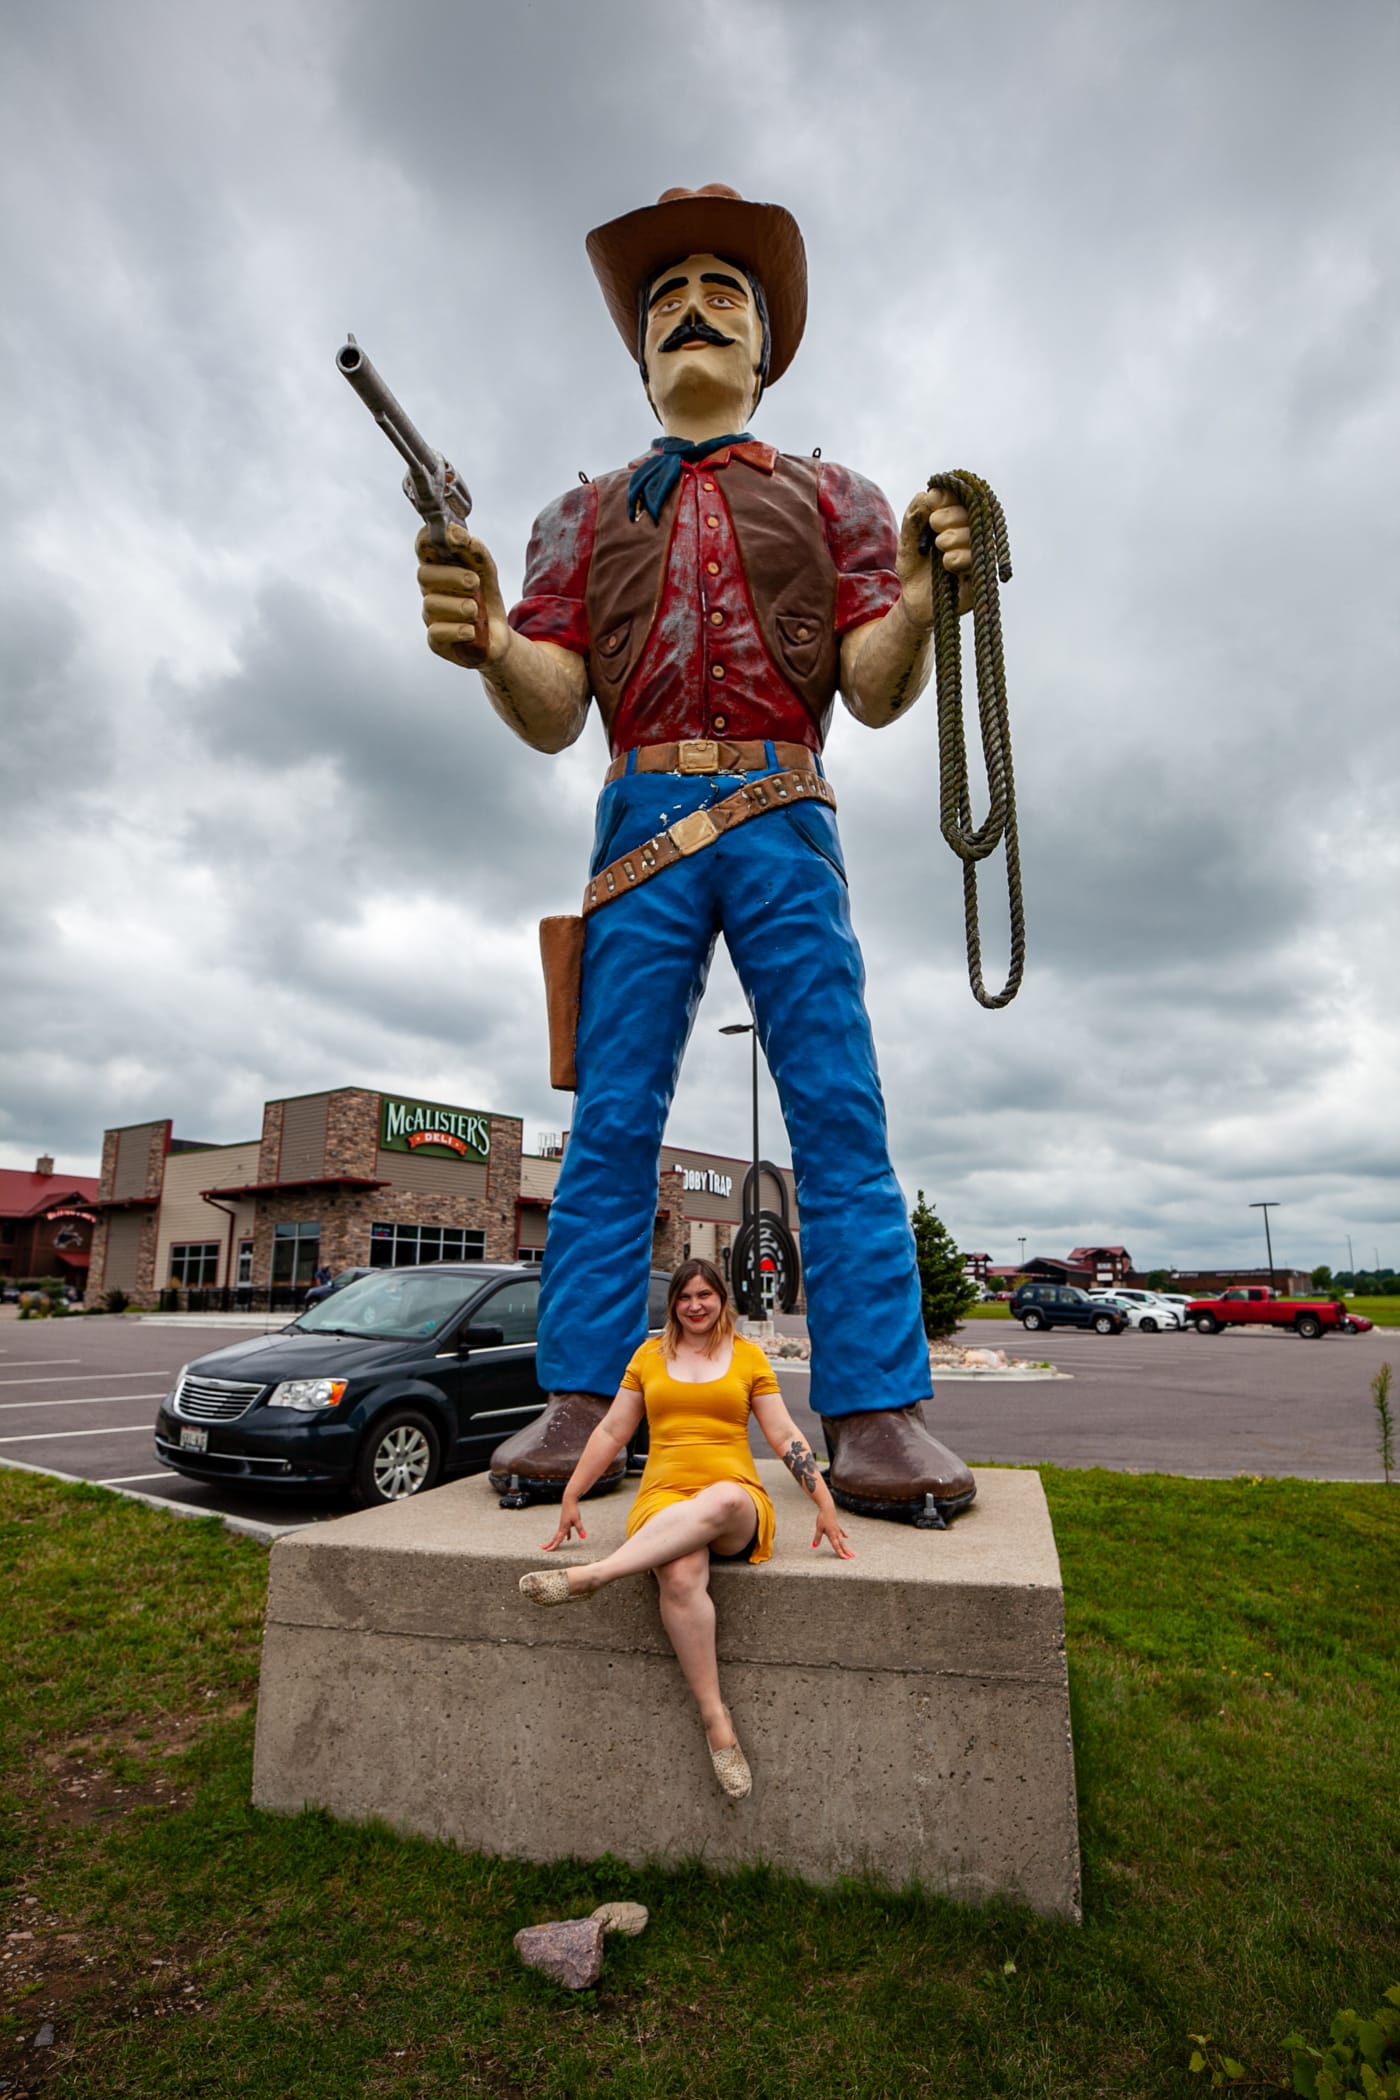 Giant Fiberglass Cowboy Statue in Wisconsin Dells | Wisconsin Dells Muffler Man and Roadside Attractions in Wisconsin